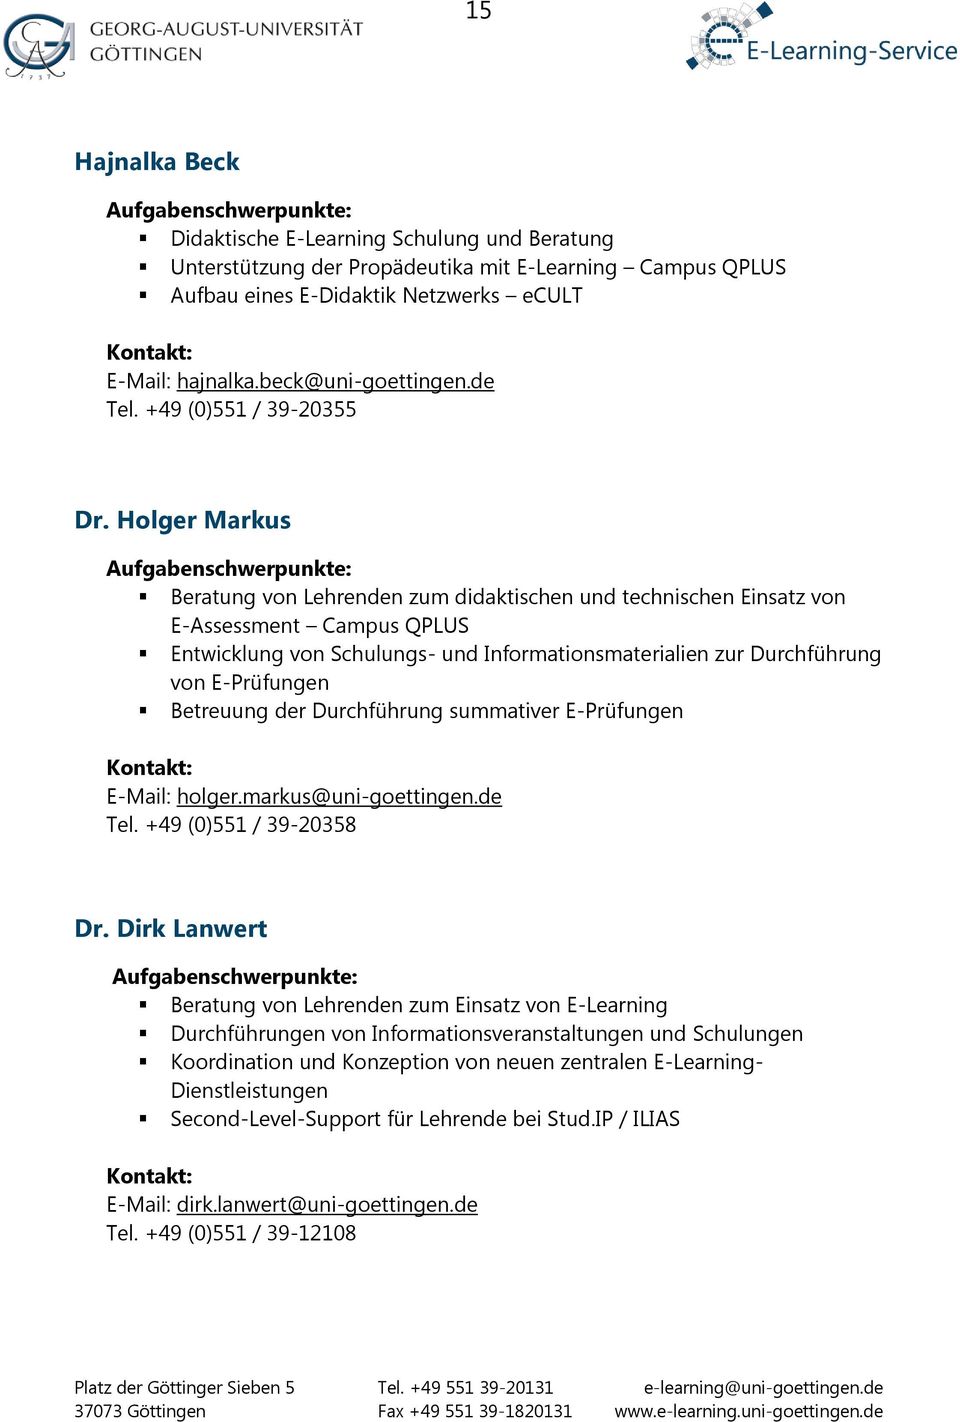 Holger Markus Aufgabenschwerpunkte: Beratung von Lehrenden zum didaktischen und technischen Einsatz von E-Assessment Campus QPLUS Entwicklung von Schulungs- und Informationsmaterialien zur